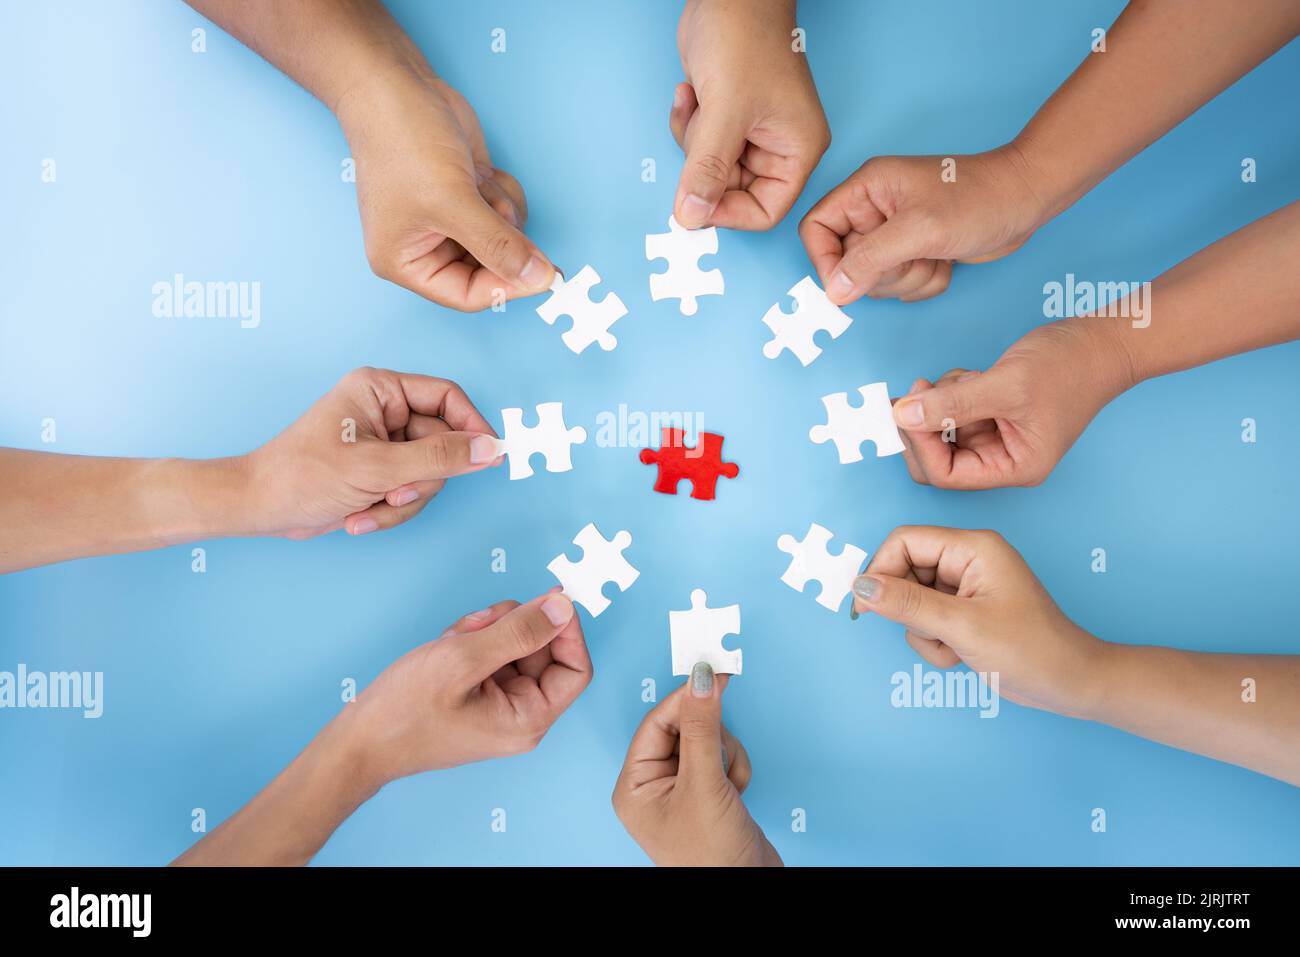 Business concept, gruppo di persone aziendali che assemblano puzzle e rappresentano il supporto del team e aiutano a collaborare Foto Stock